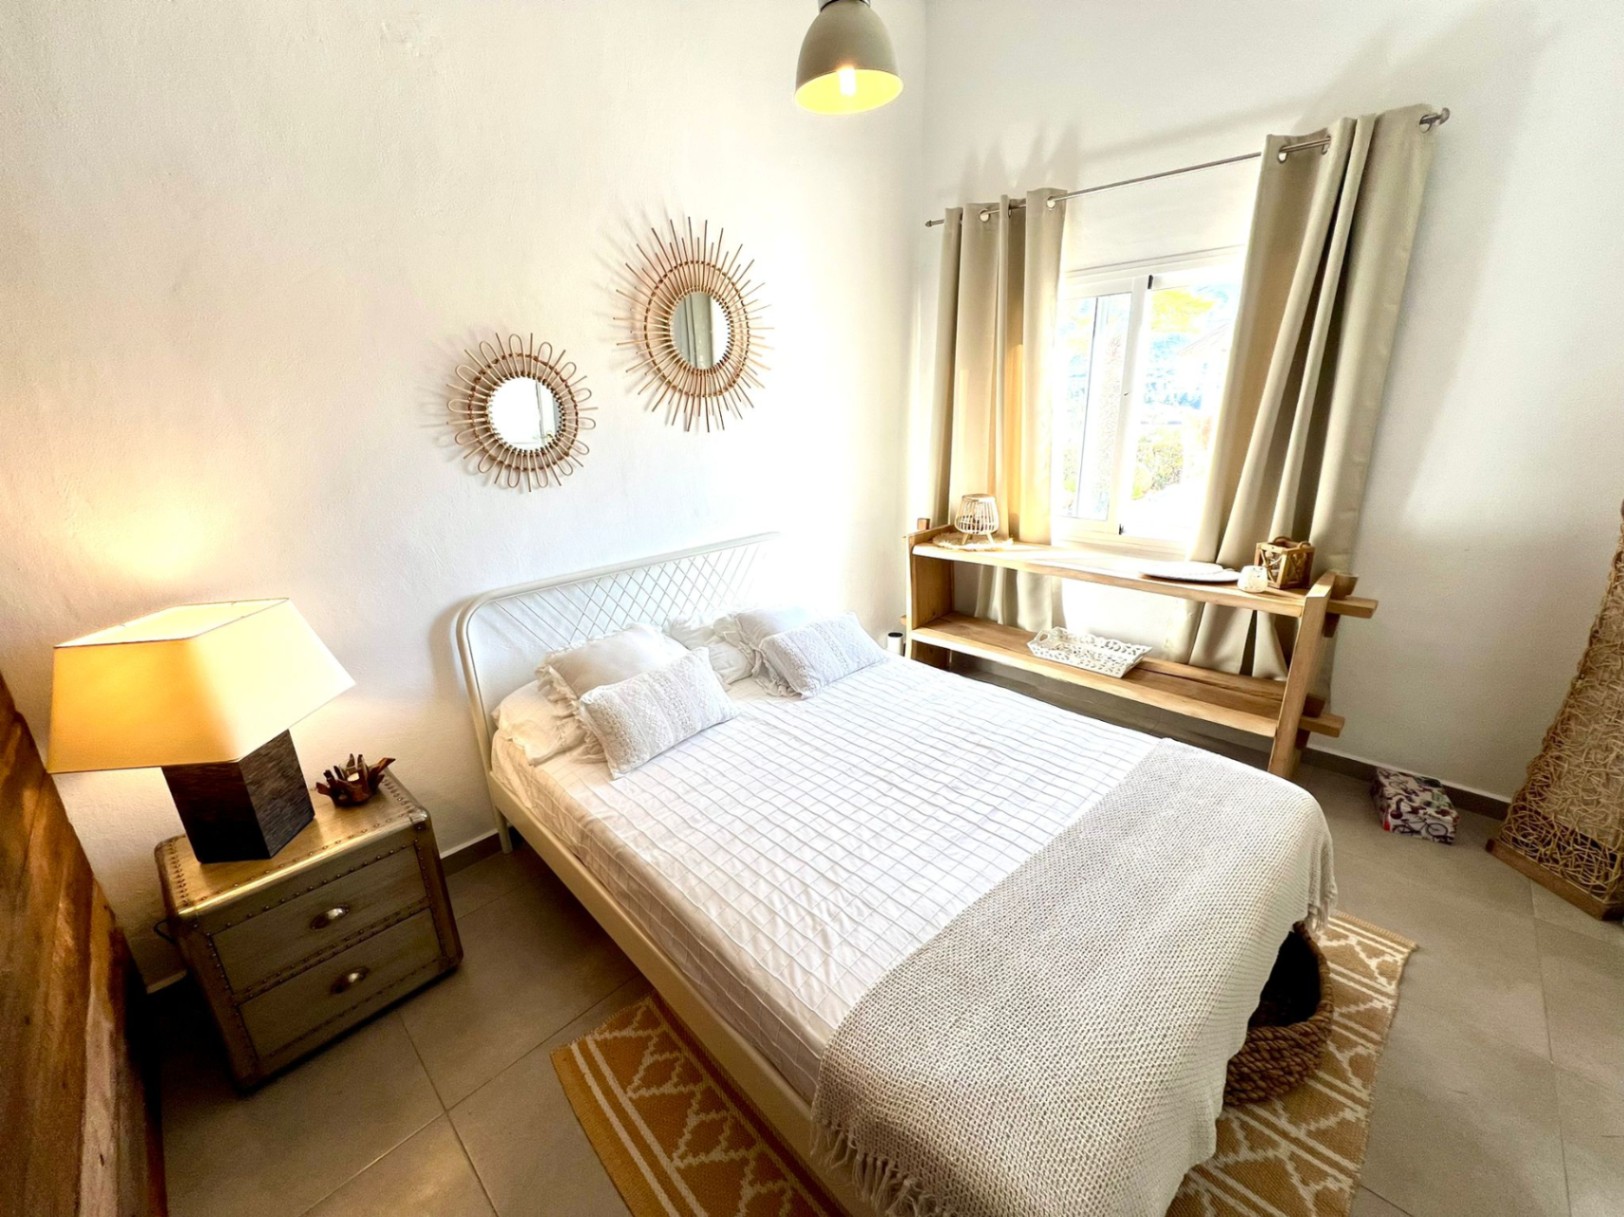 Exquisita villa de 5 dormitorios con impresionantes vistas en venta en Jávea cerca de la playa.